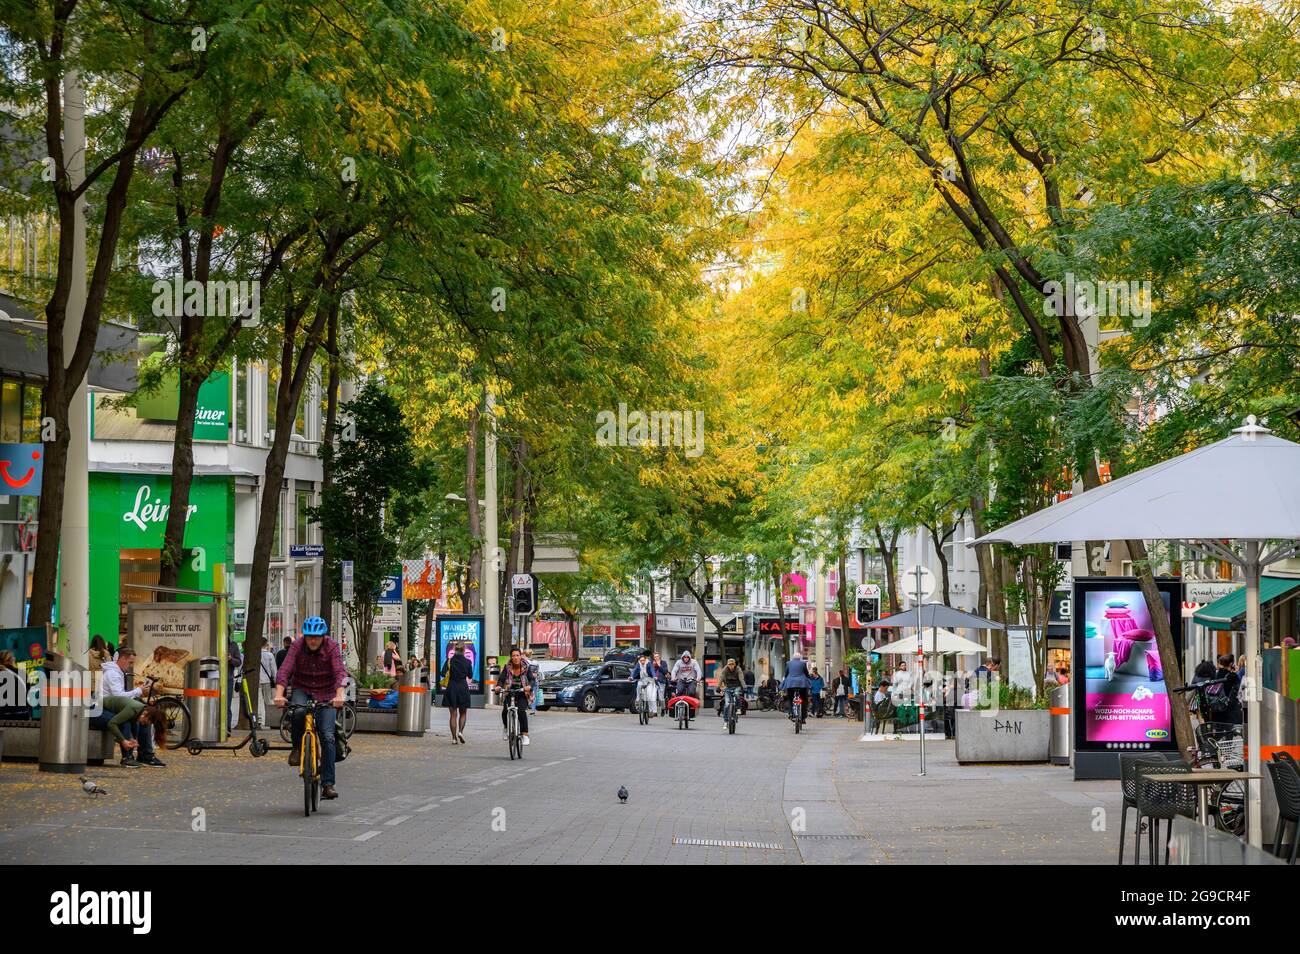 Vienne Autriche - 26 septembre 2019. La rue Mariahilfer est l'une des célèbres rues commerçantes de Vienne. Banque D'Images